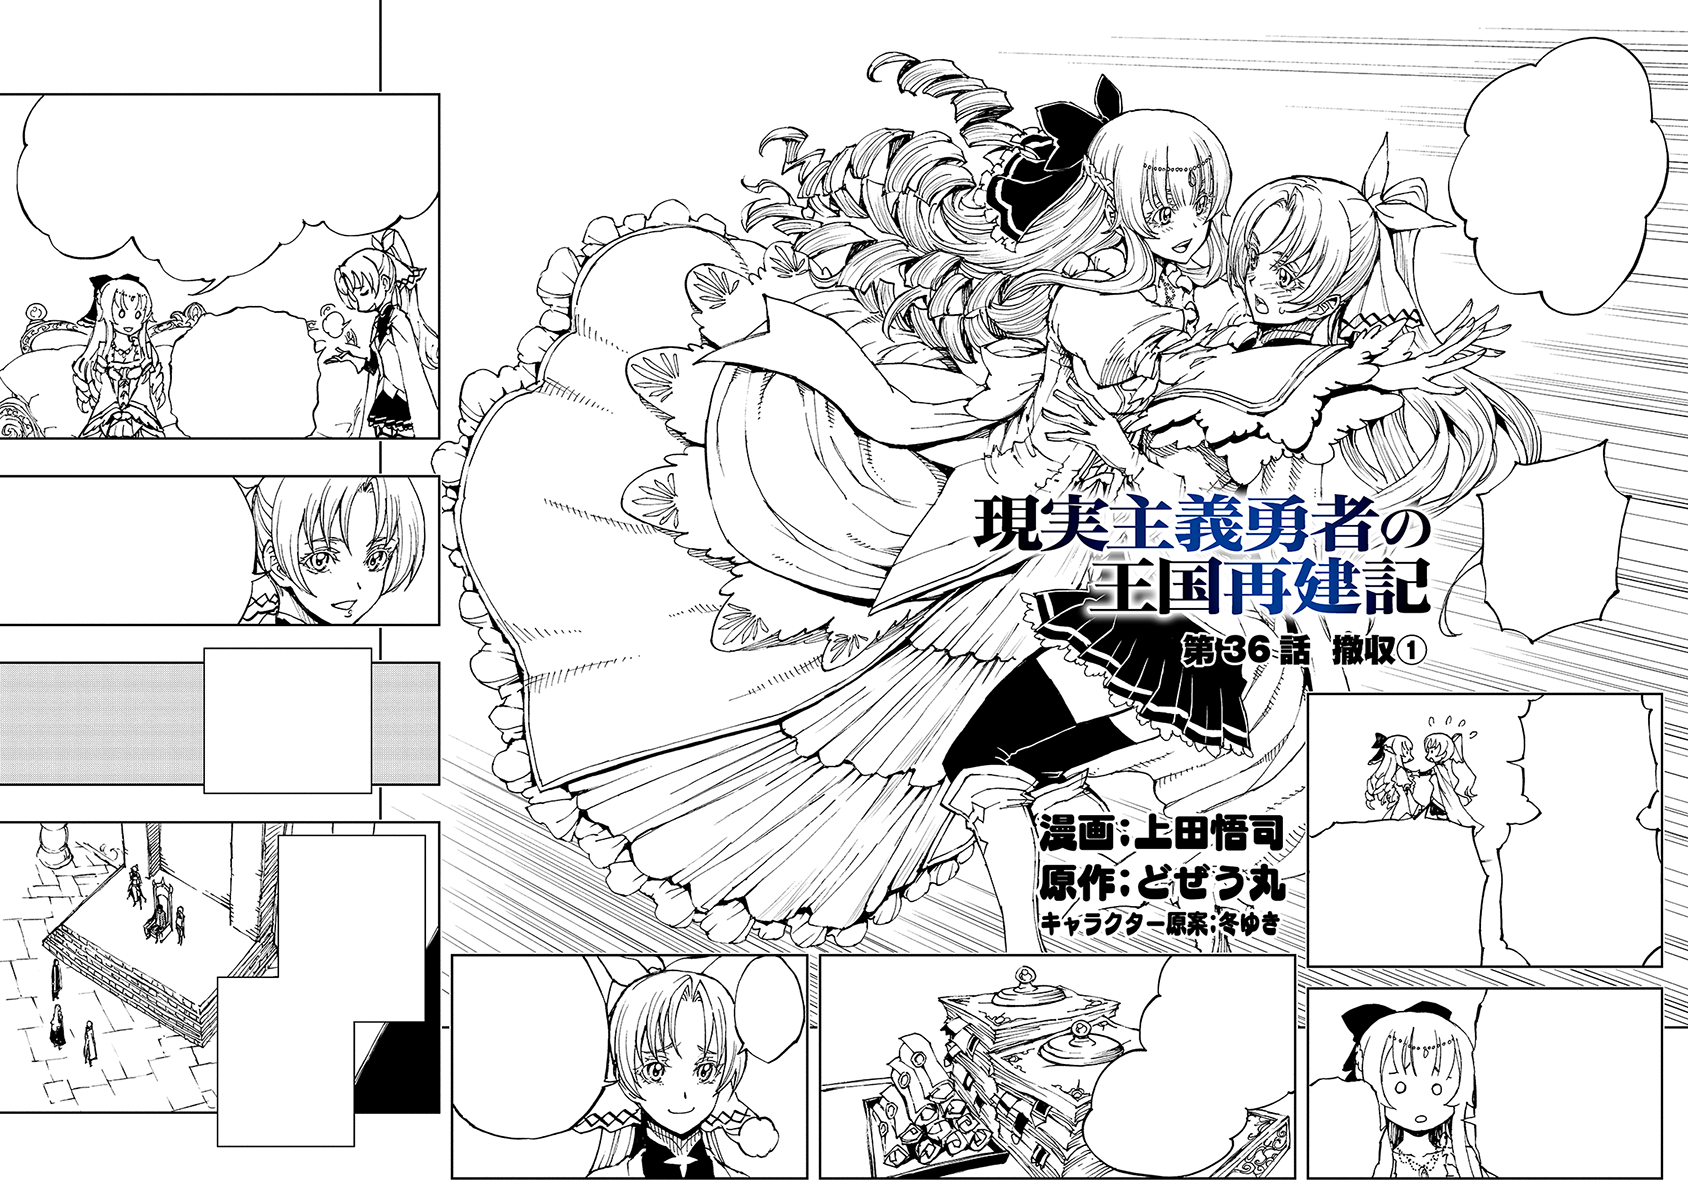 Manga Chapter 036, Genjitsu Shugi Yuusha no Oukoku Saikenki Wiki